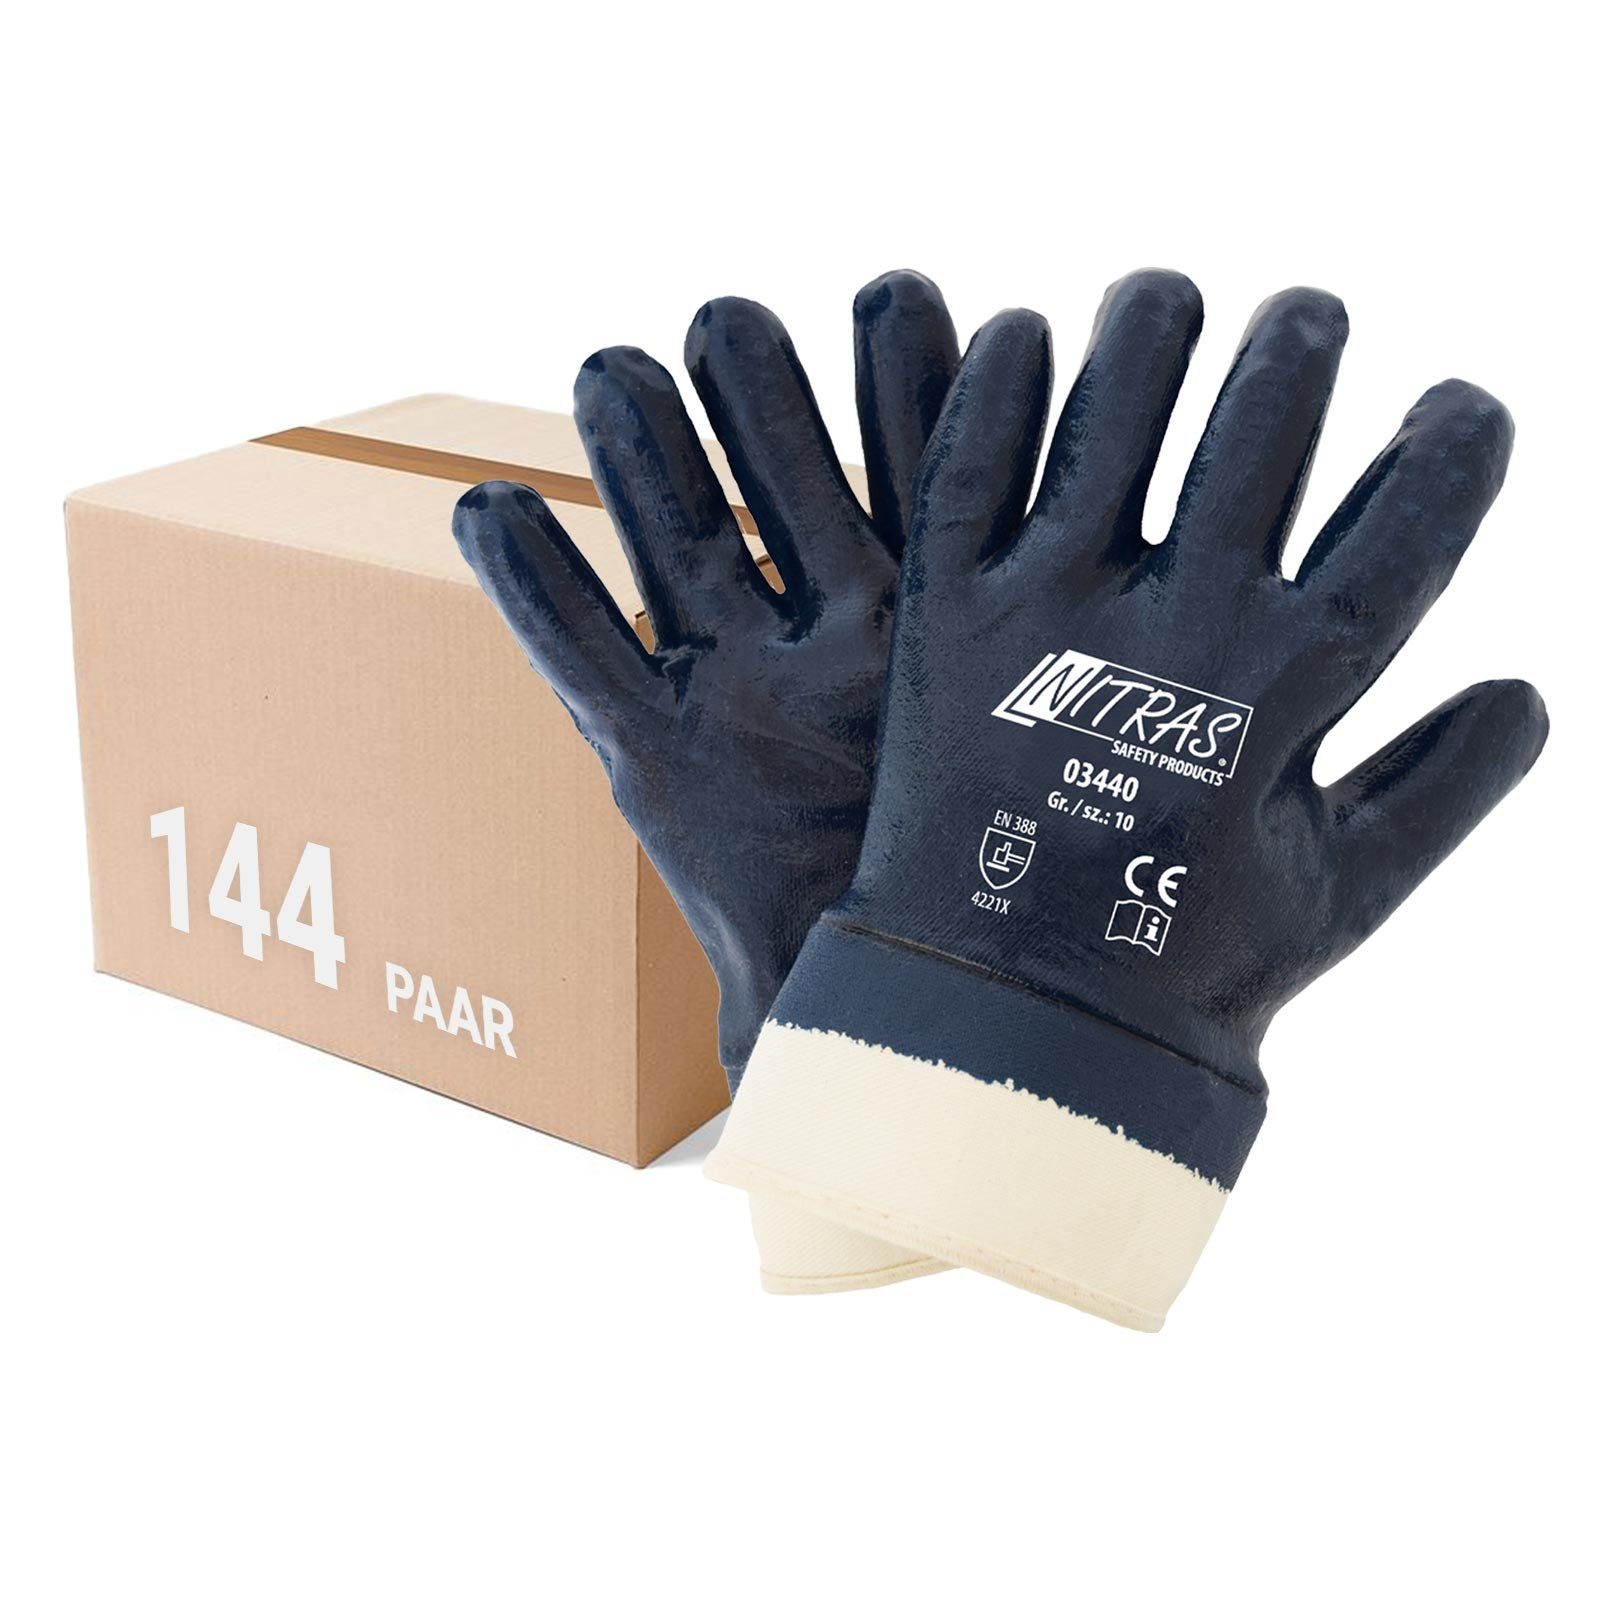 Nitras Nitril-Handschuhe NITRAS 03440 Nitrilhandschuhe Arbeitshandschuhe mit Stulpe - 144 Paar (Spar-Set) | Handschuhe